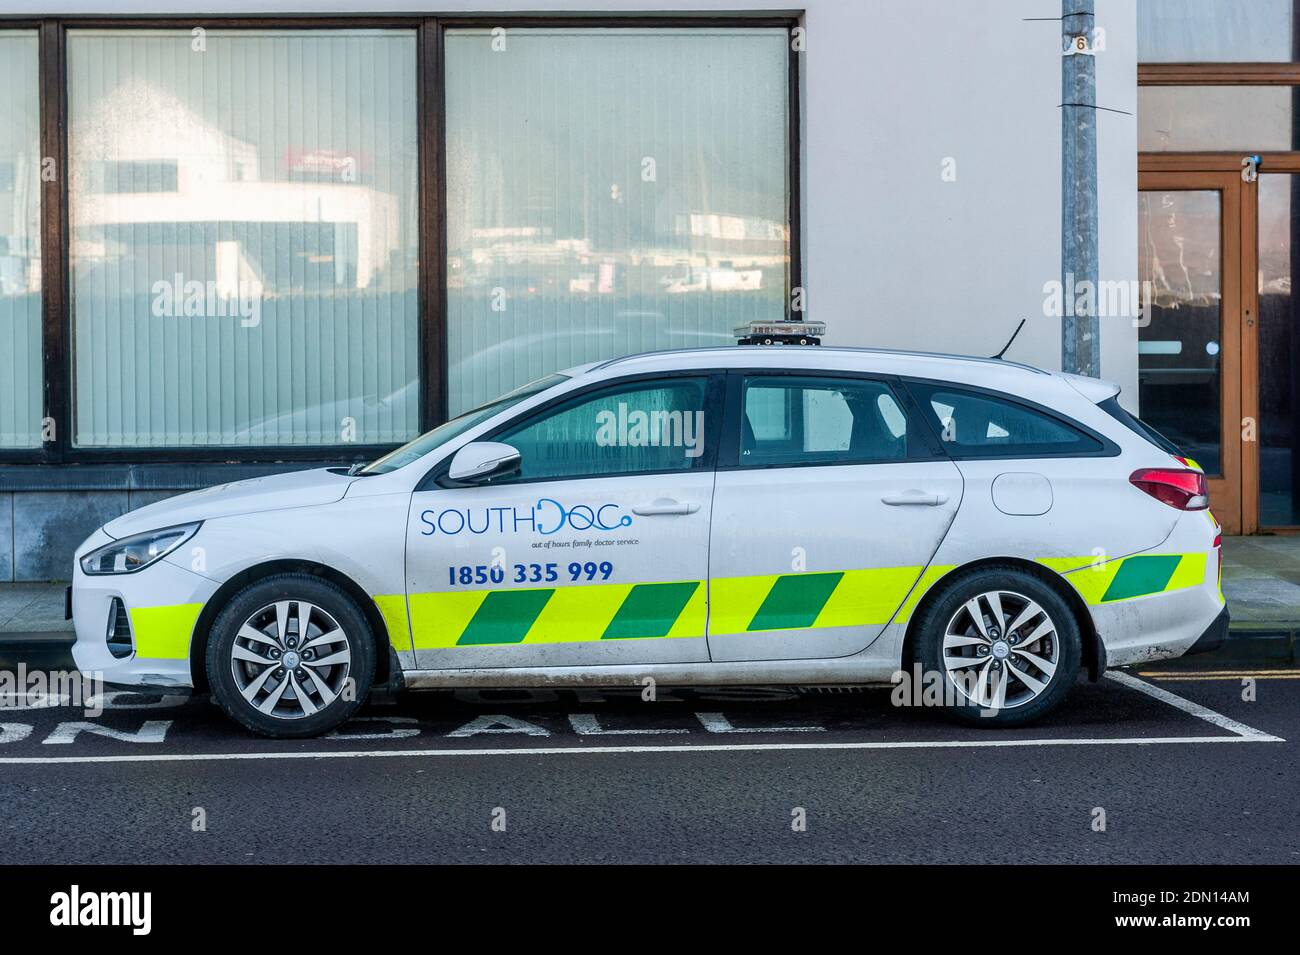 South Doc véhicule d'urgence hors heures d'ouverture en Irlande Banque D'Images